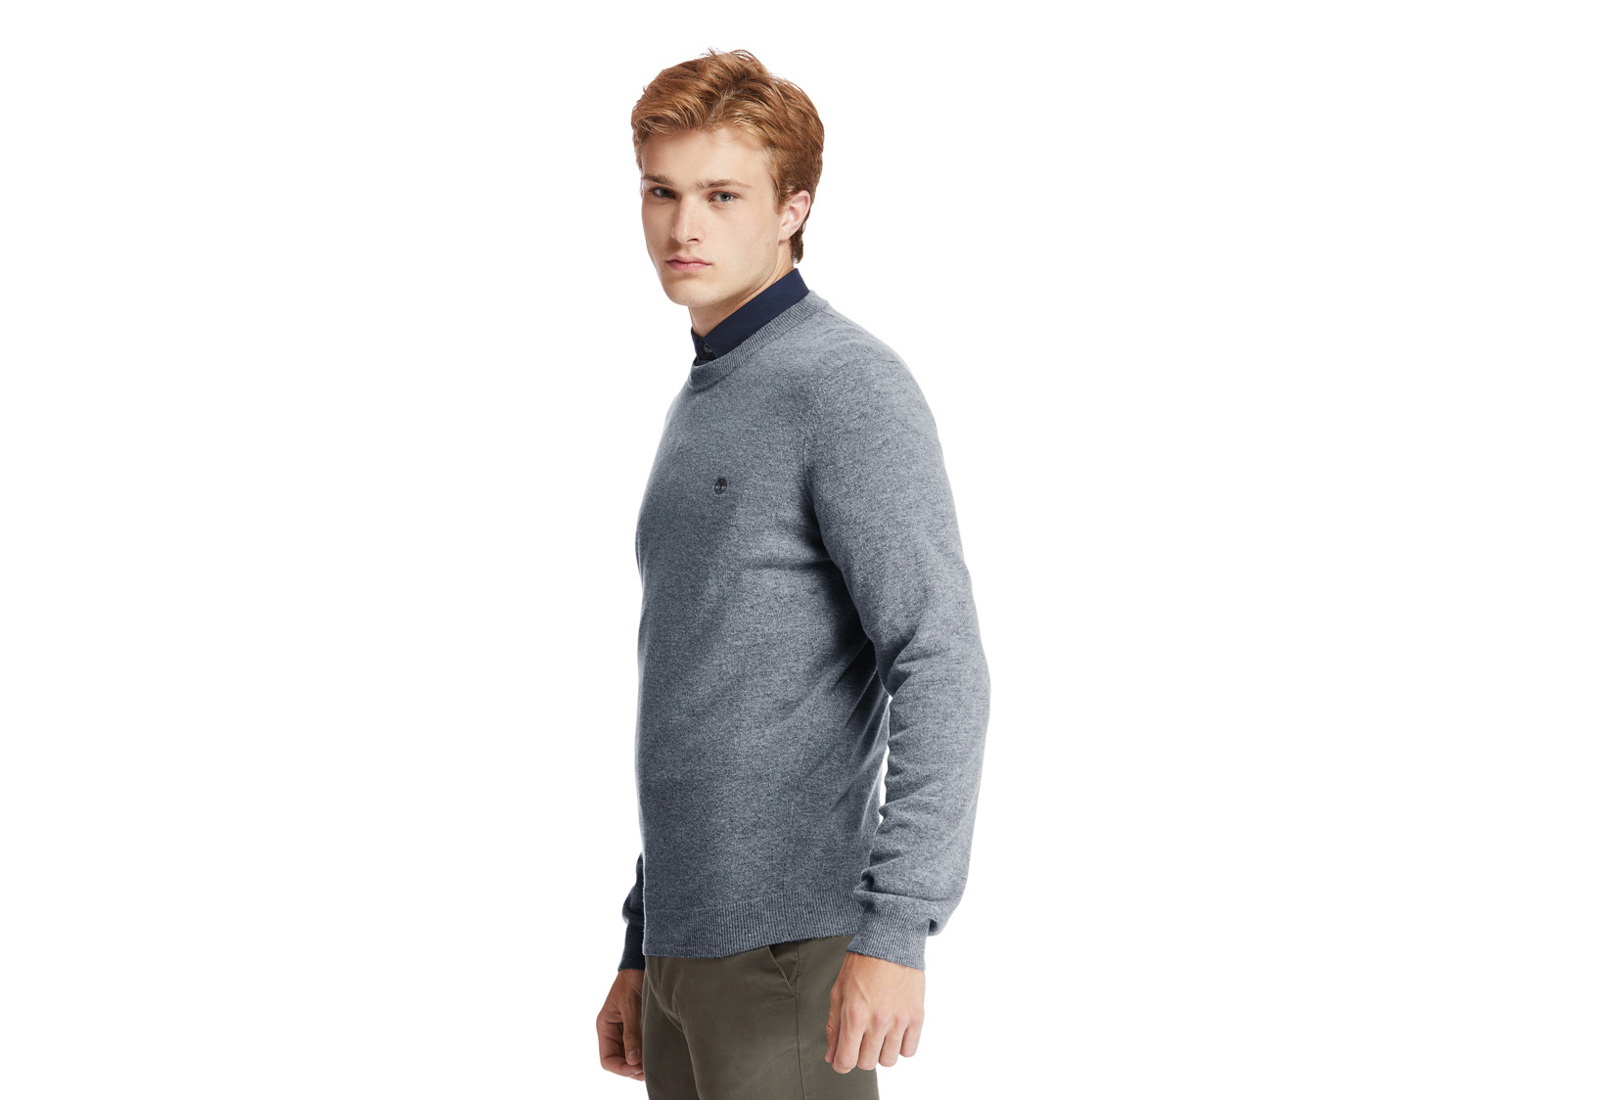 Timberland Îmbrăcăminte Merino Crew Sweater